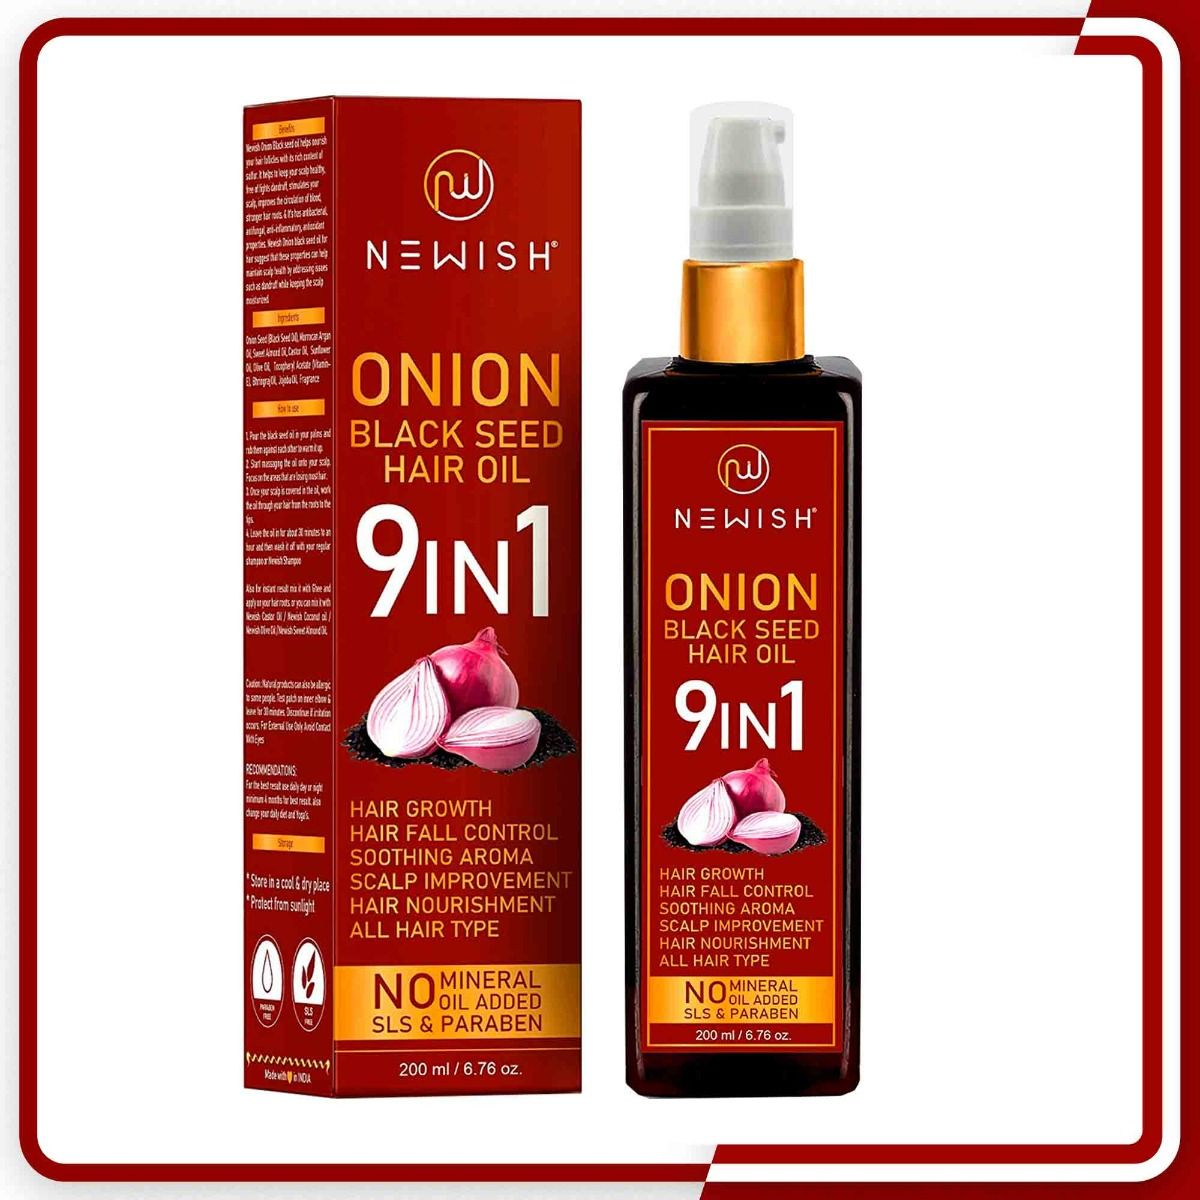 Buy Newish 9 in 1 Onion Black Seed Hair Oil, 200 ml Online